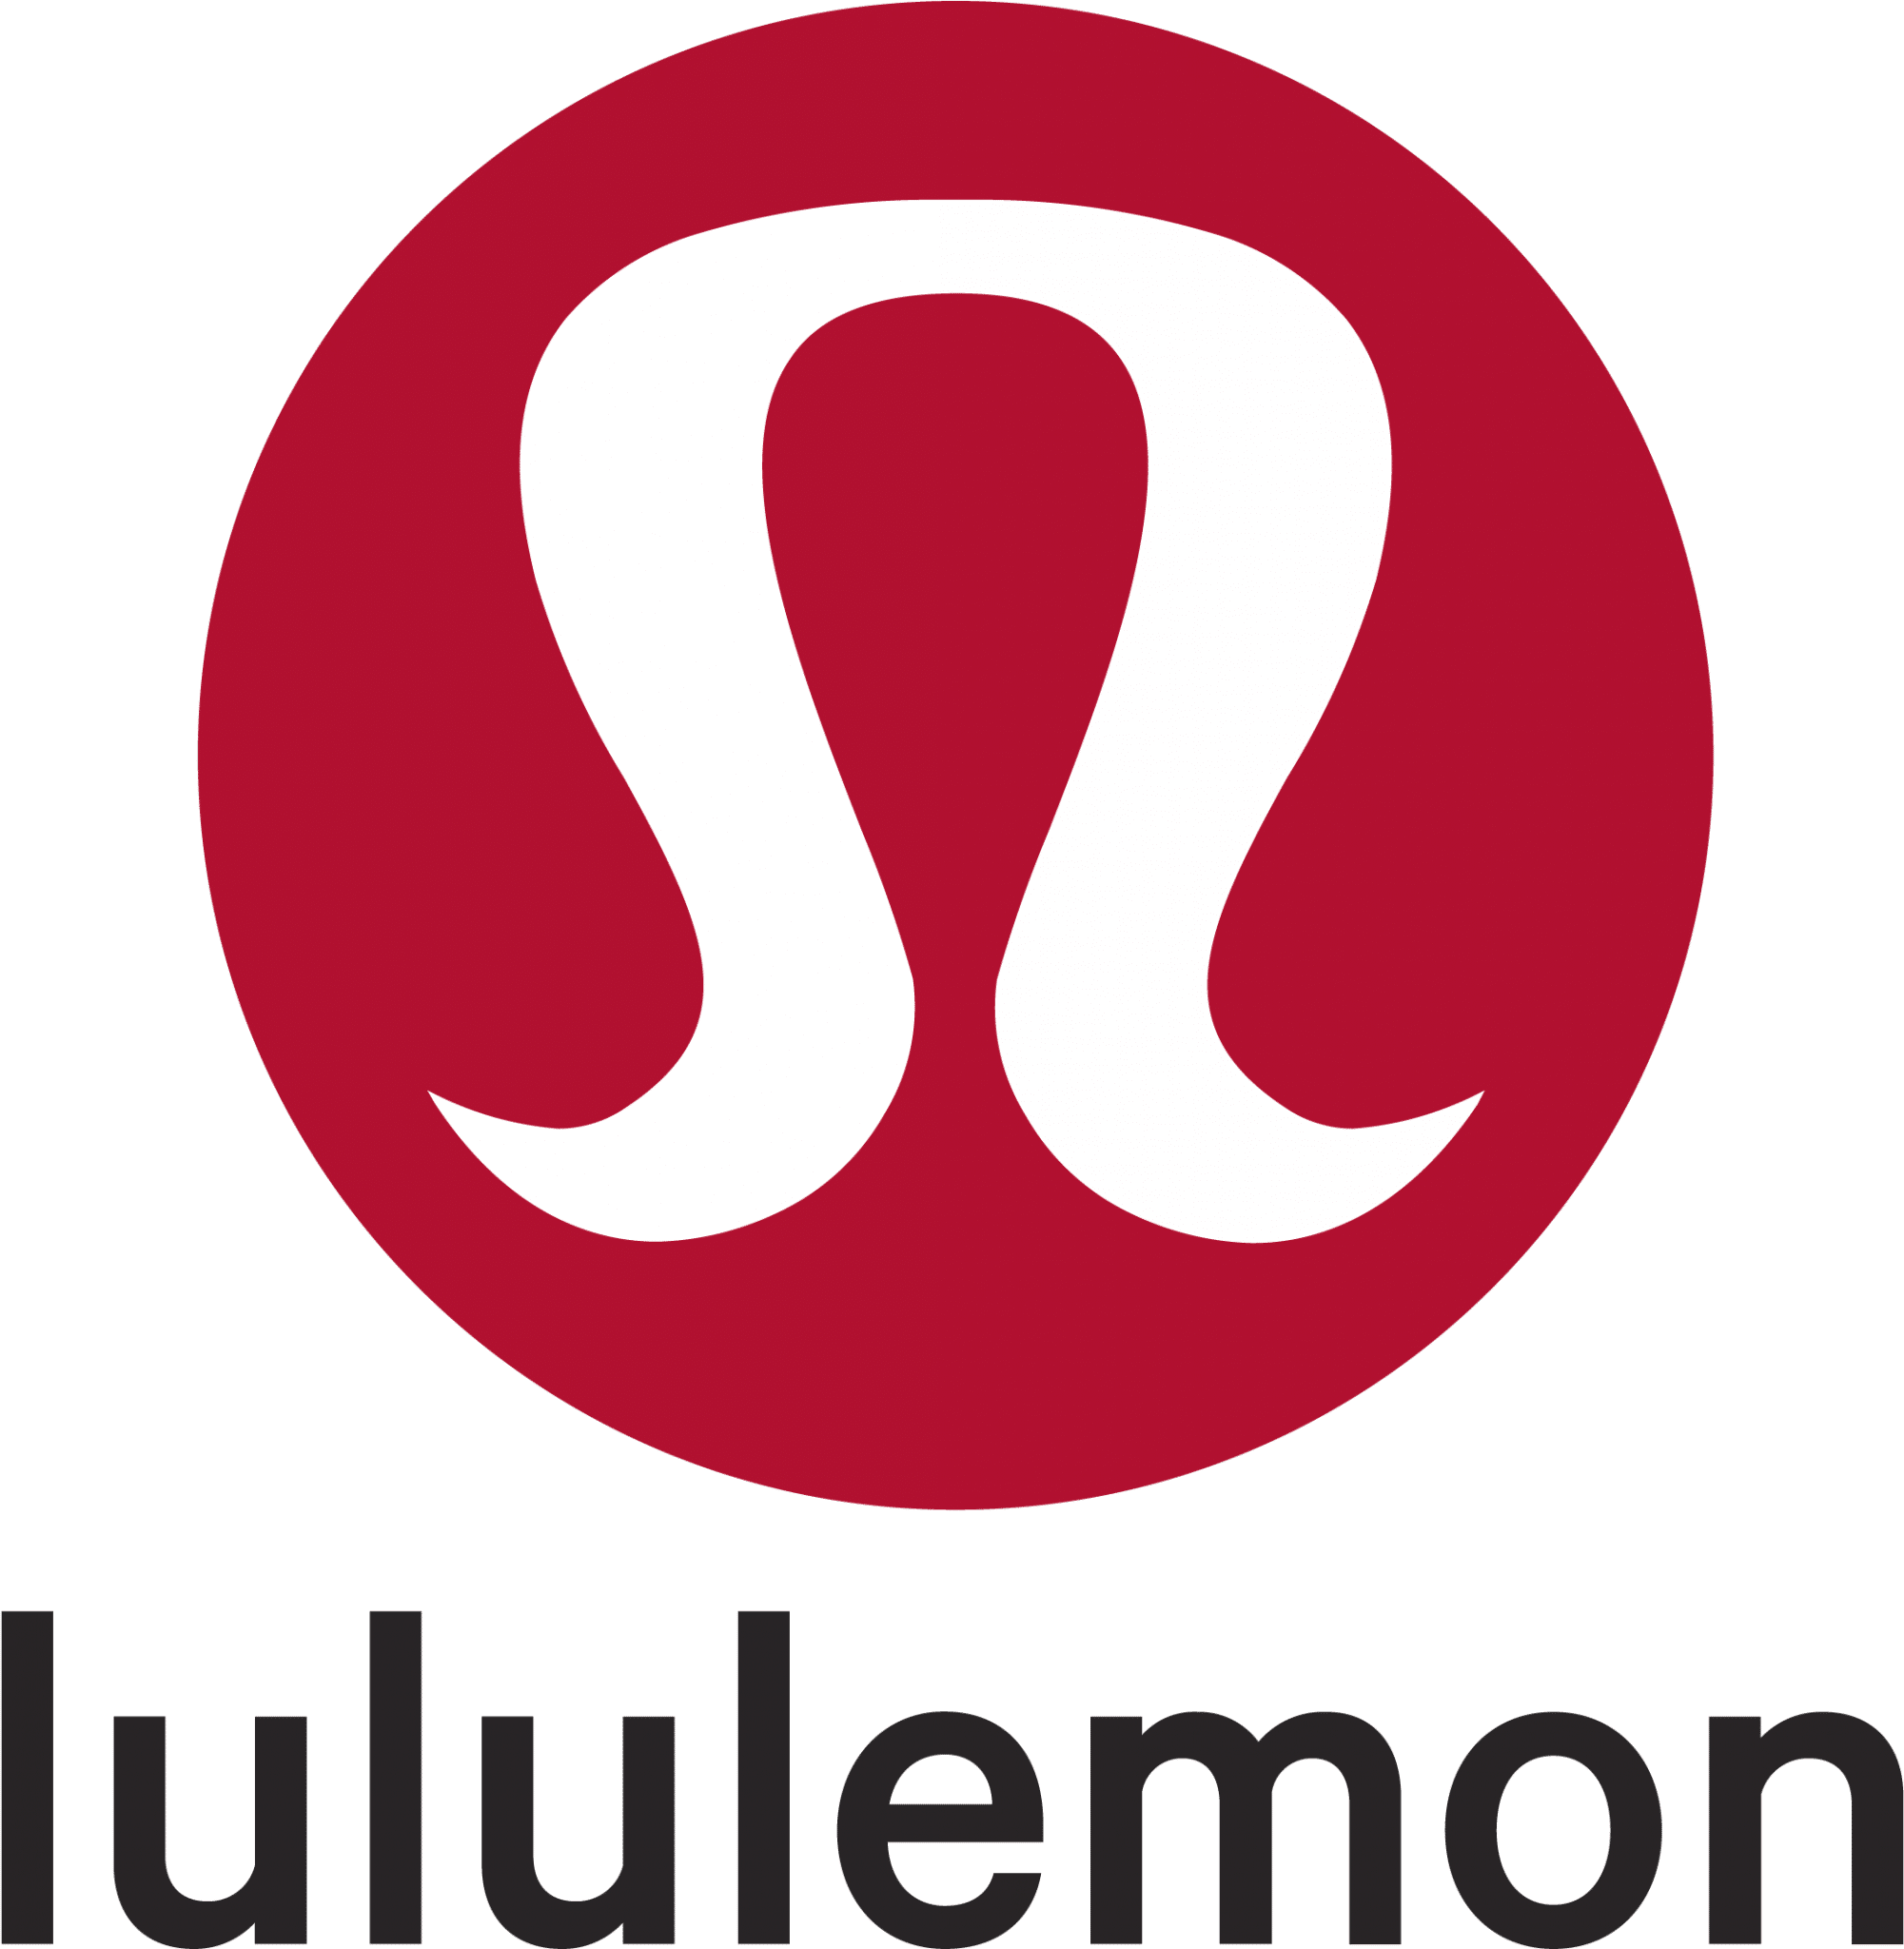 512-5127106_lululemon-emblema-lululemon-logo-black-background - The ...